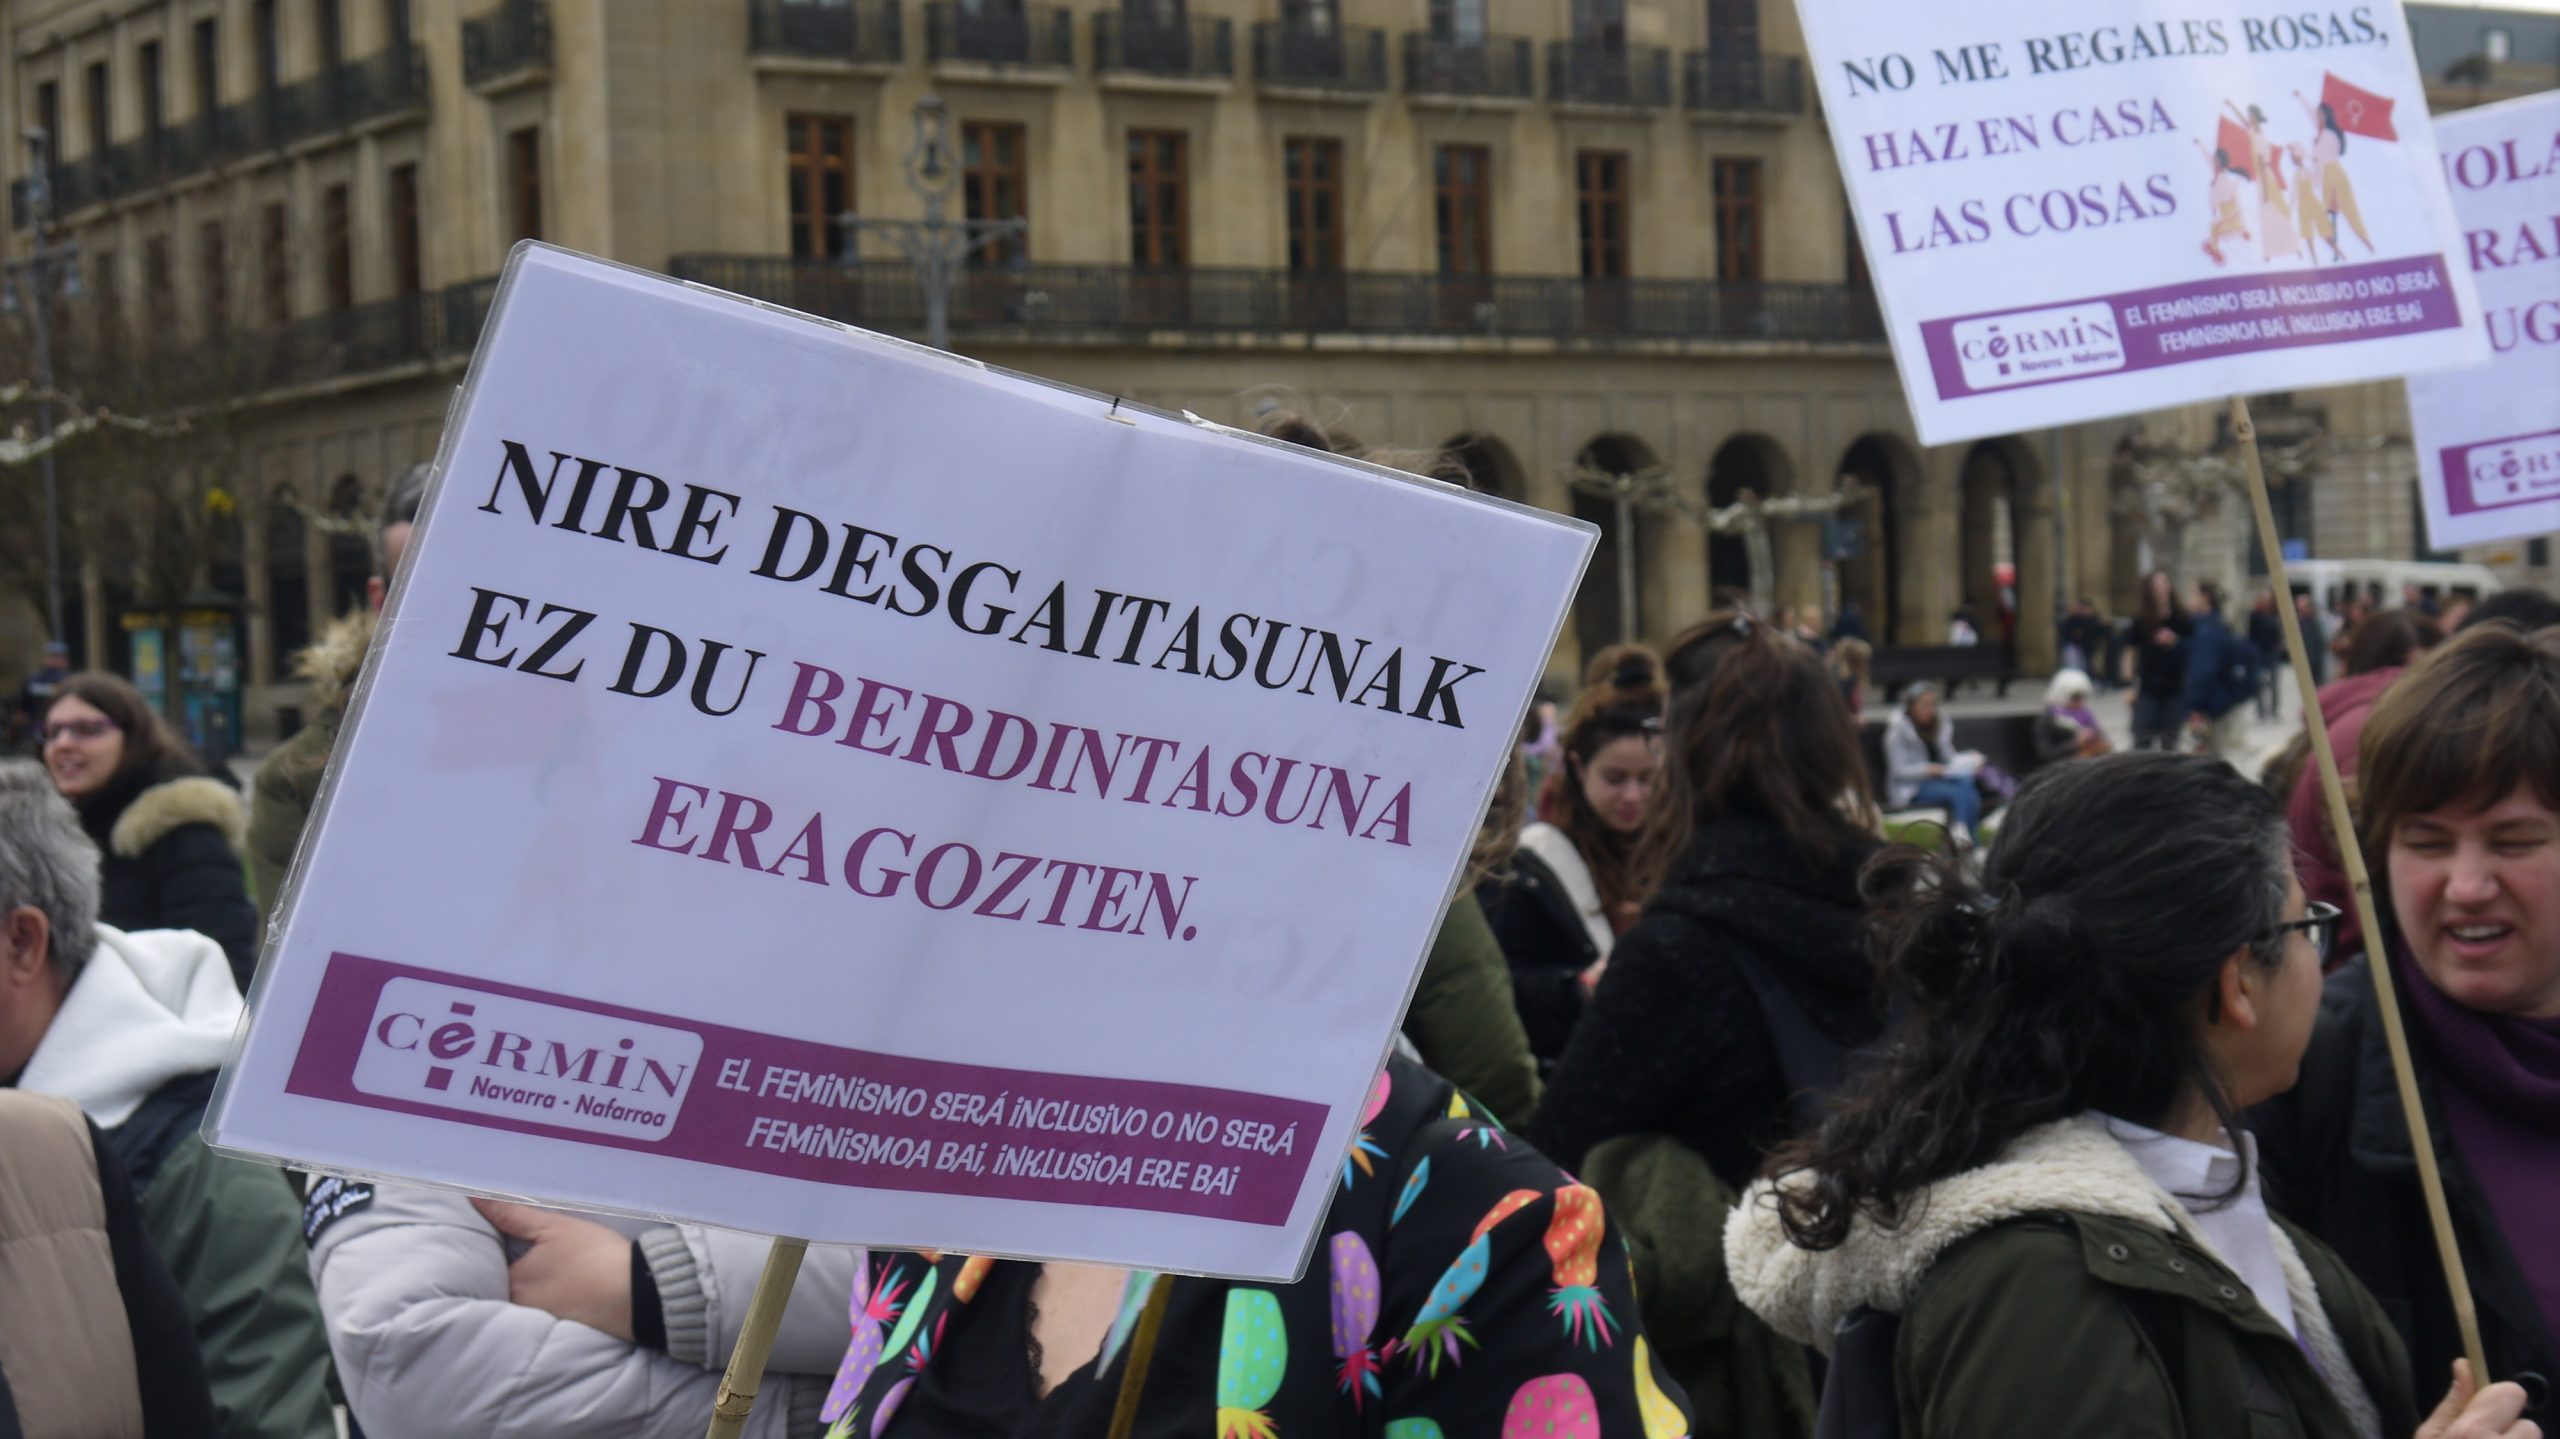 El primer cartel está en euskera y dice "mi discapacidad no impide la igualdad". El segundo está en castellano y dice: No me regales rosas, haz en casa las cosas. Ambos tienen el logo de CERMIN.